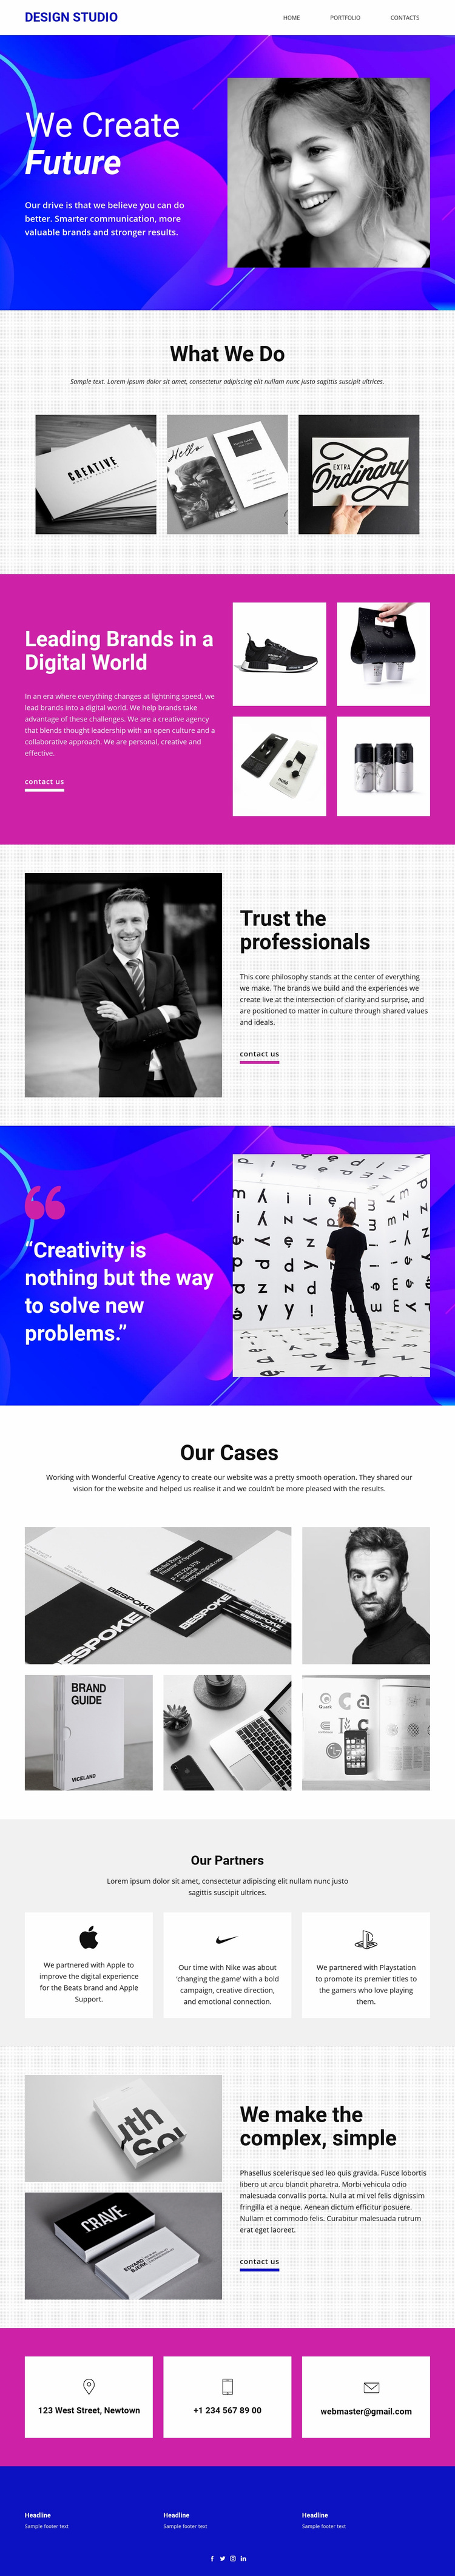 We develop the brand’s core Web Page Designer